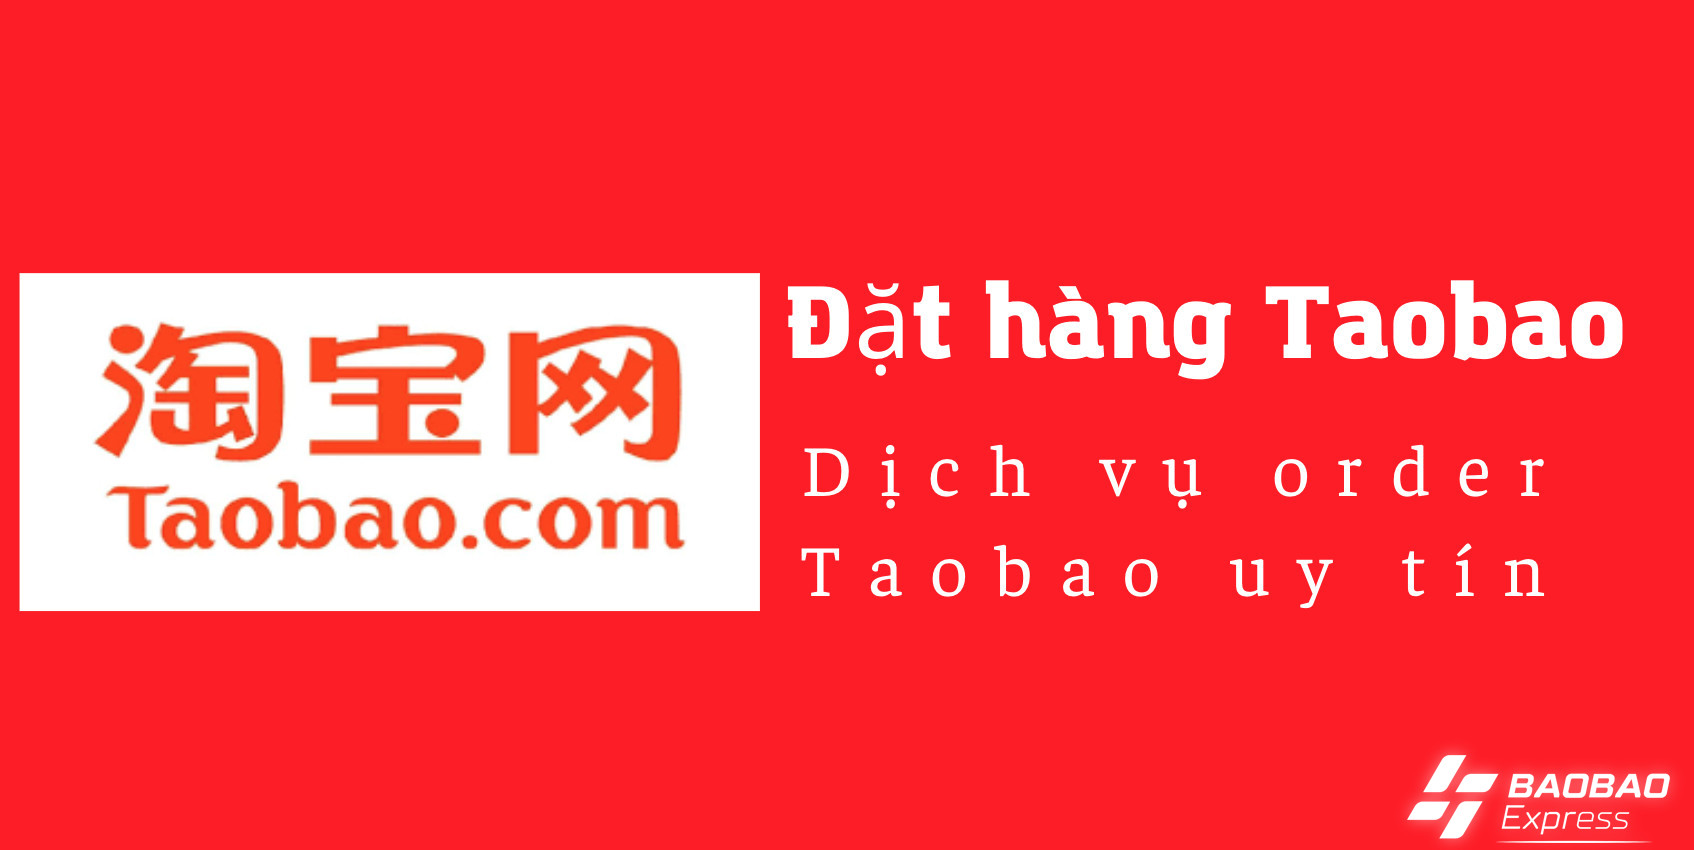 Dịch vụ đặt hàng Order Taobao uy tín tại BAOBAO Express